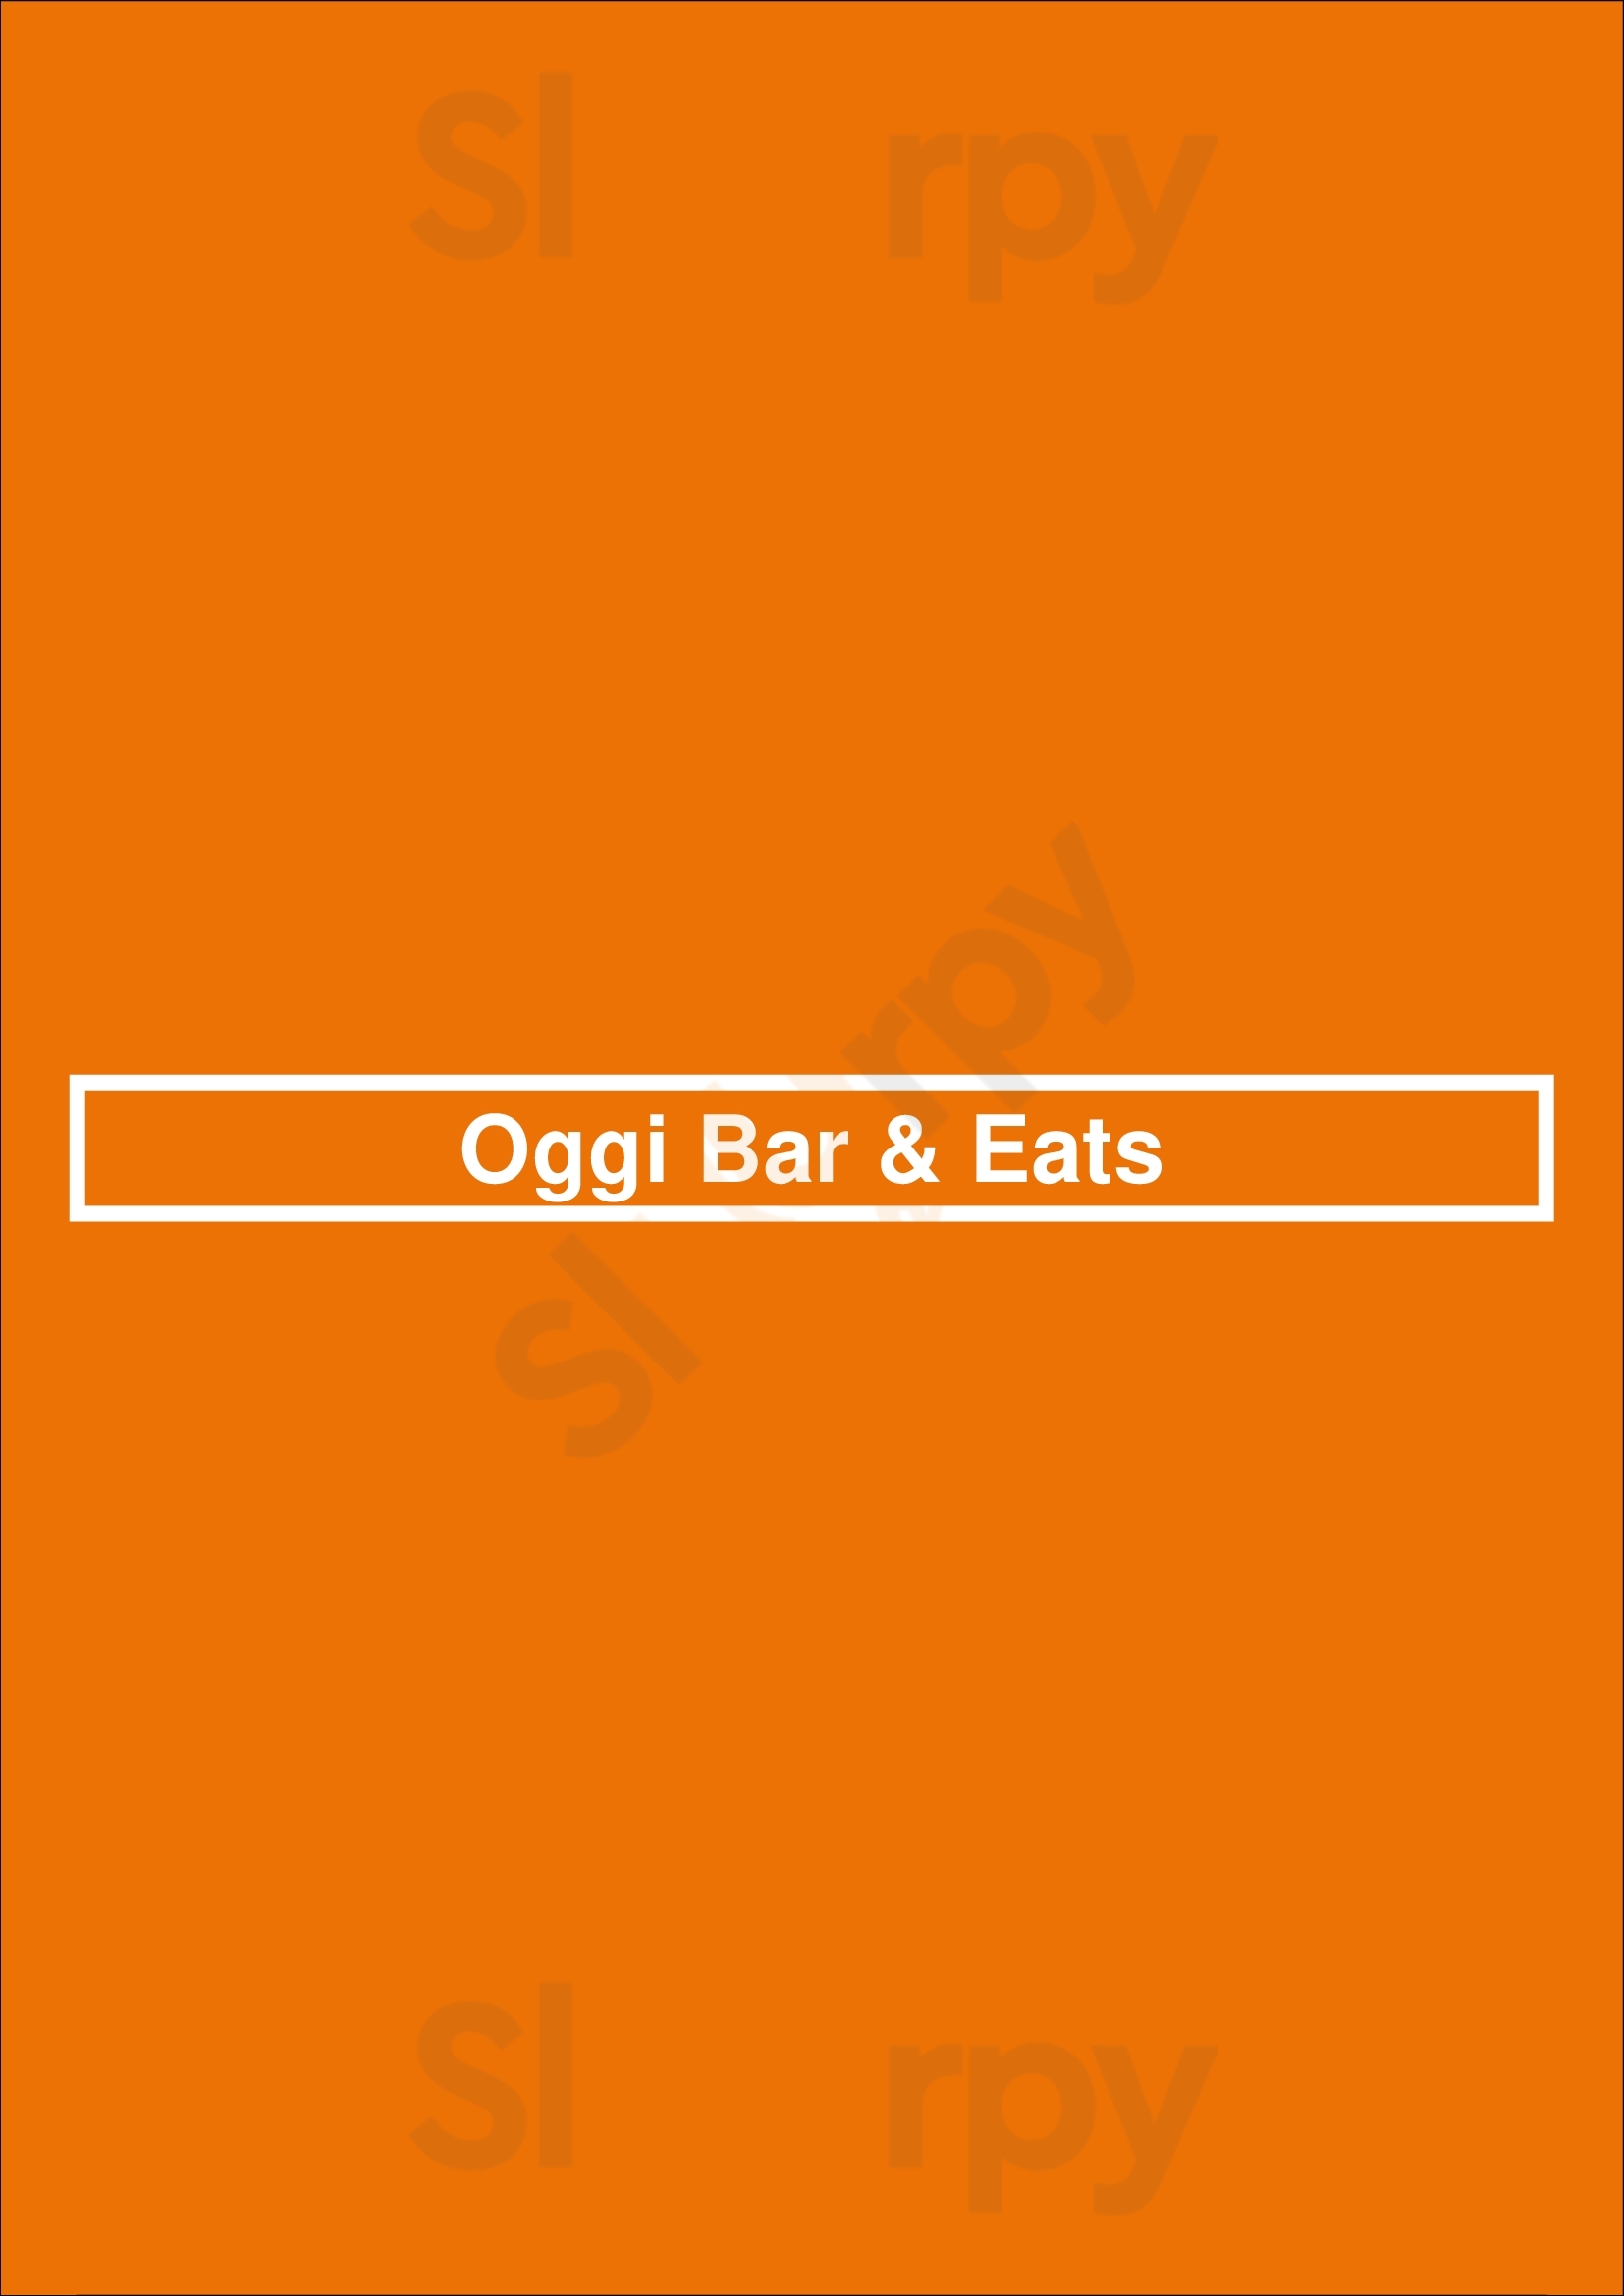 Oggi Bar & Eats Perth Menu - 1